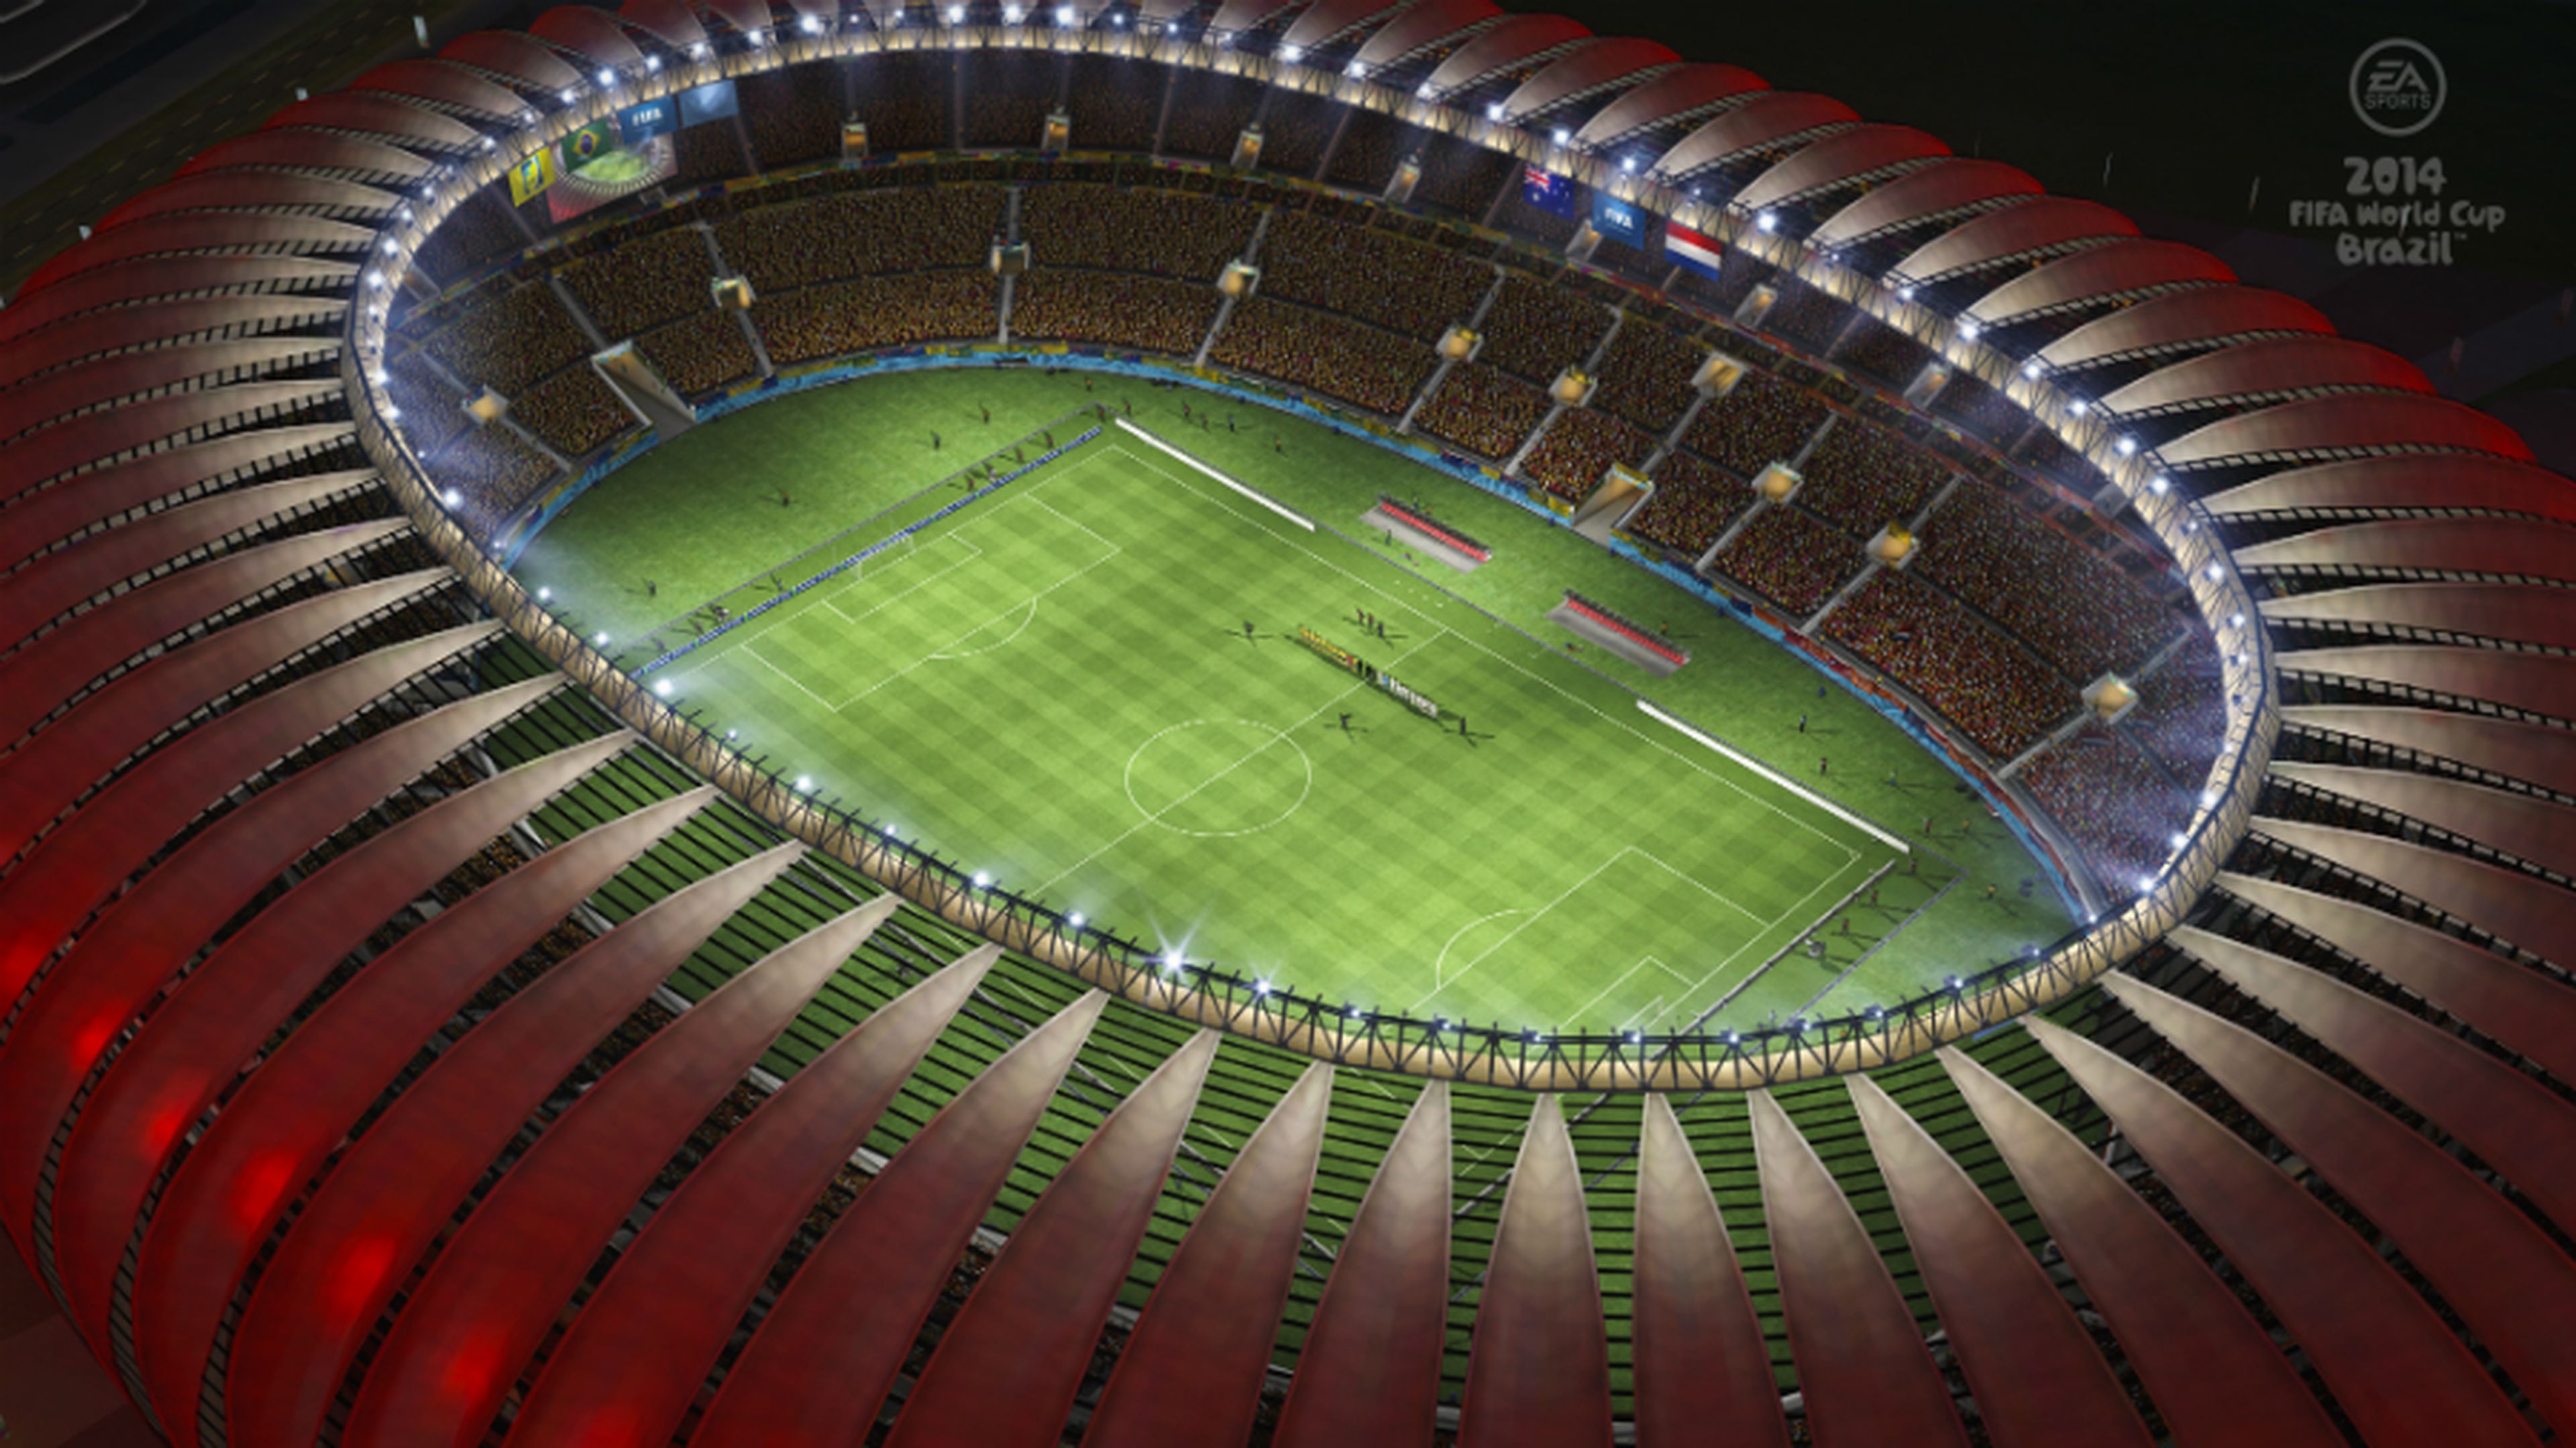 EA explica por qué FIFA Brasil 2014 no saldrá en la next gen